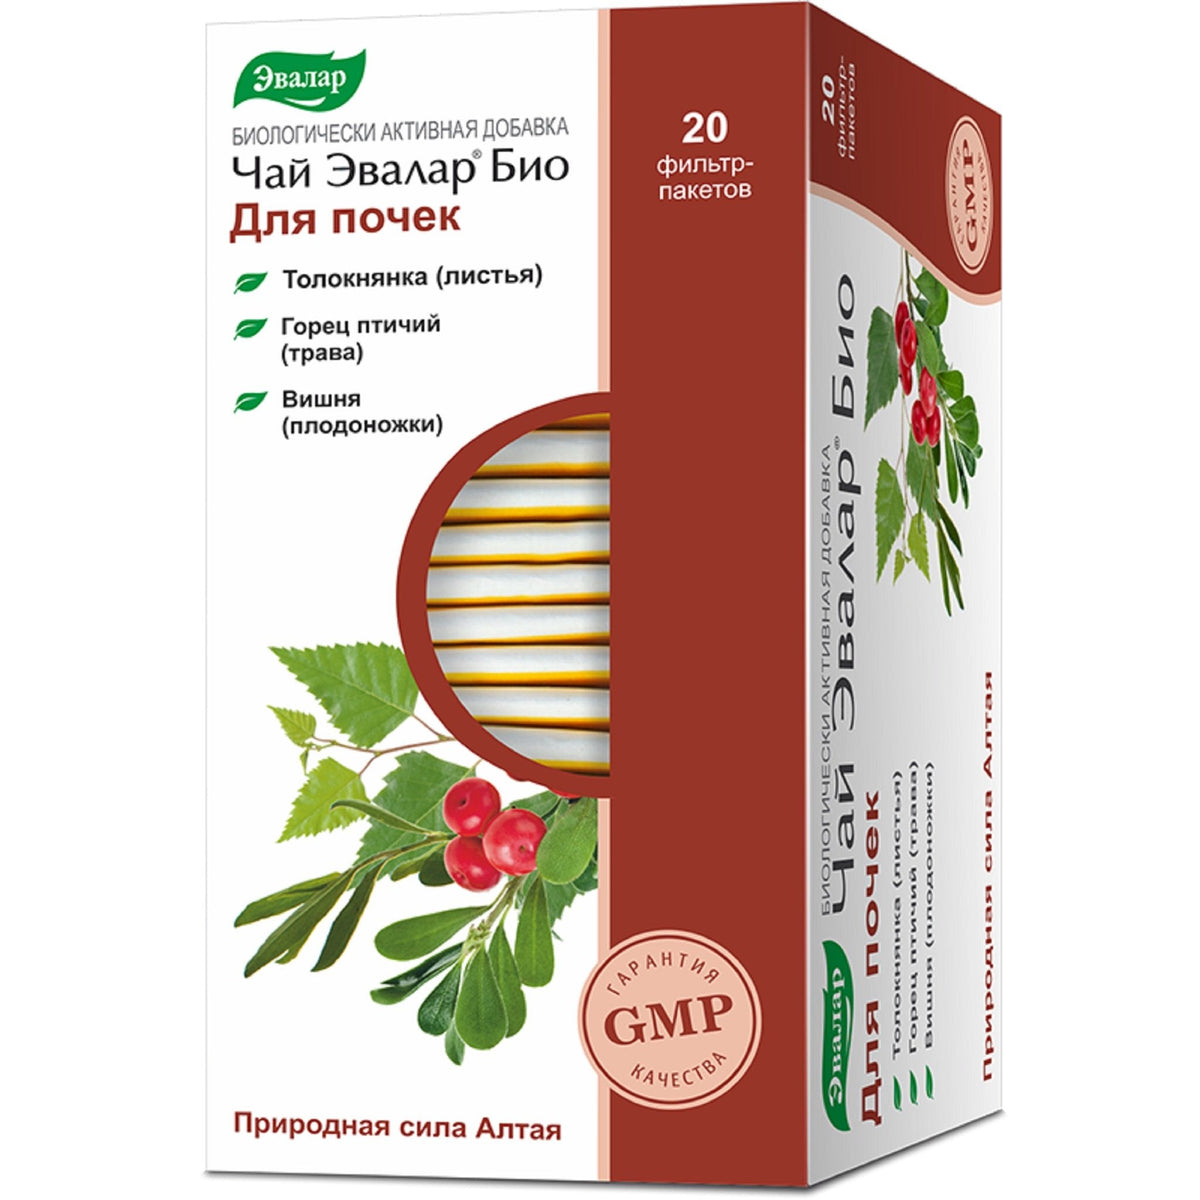 Bearberry Knotweed Cherry Evalar Tea Altai Siberia 20 bolsitas de té Herbal Mix